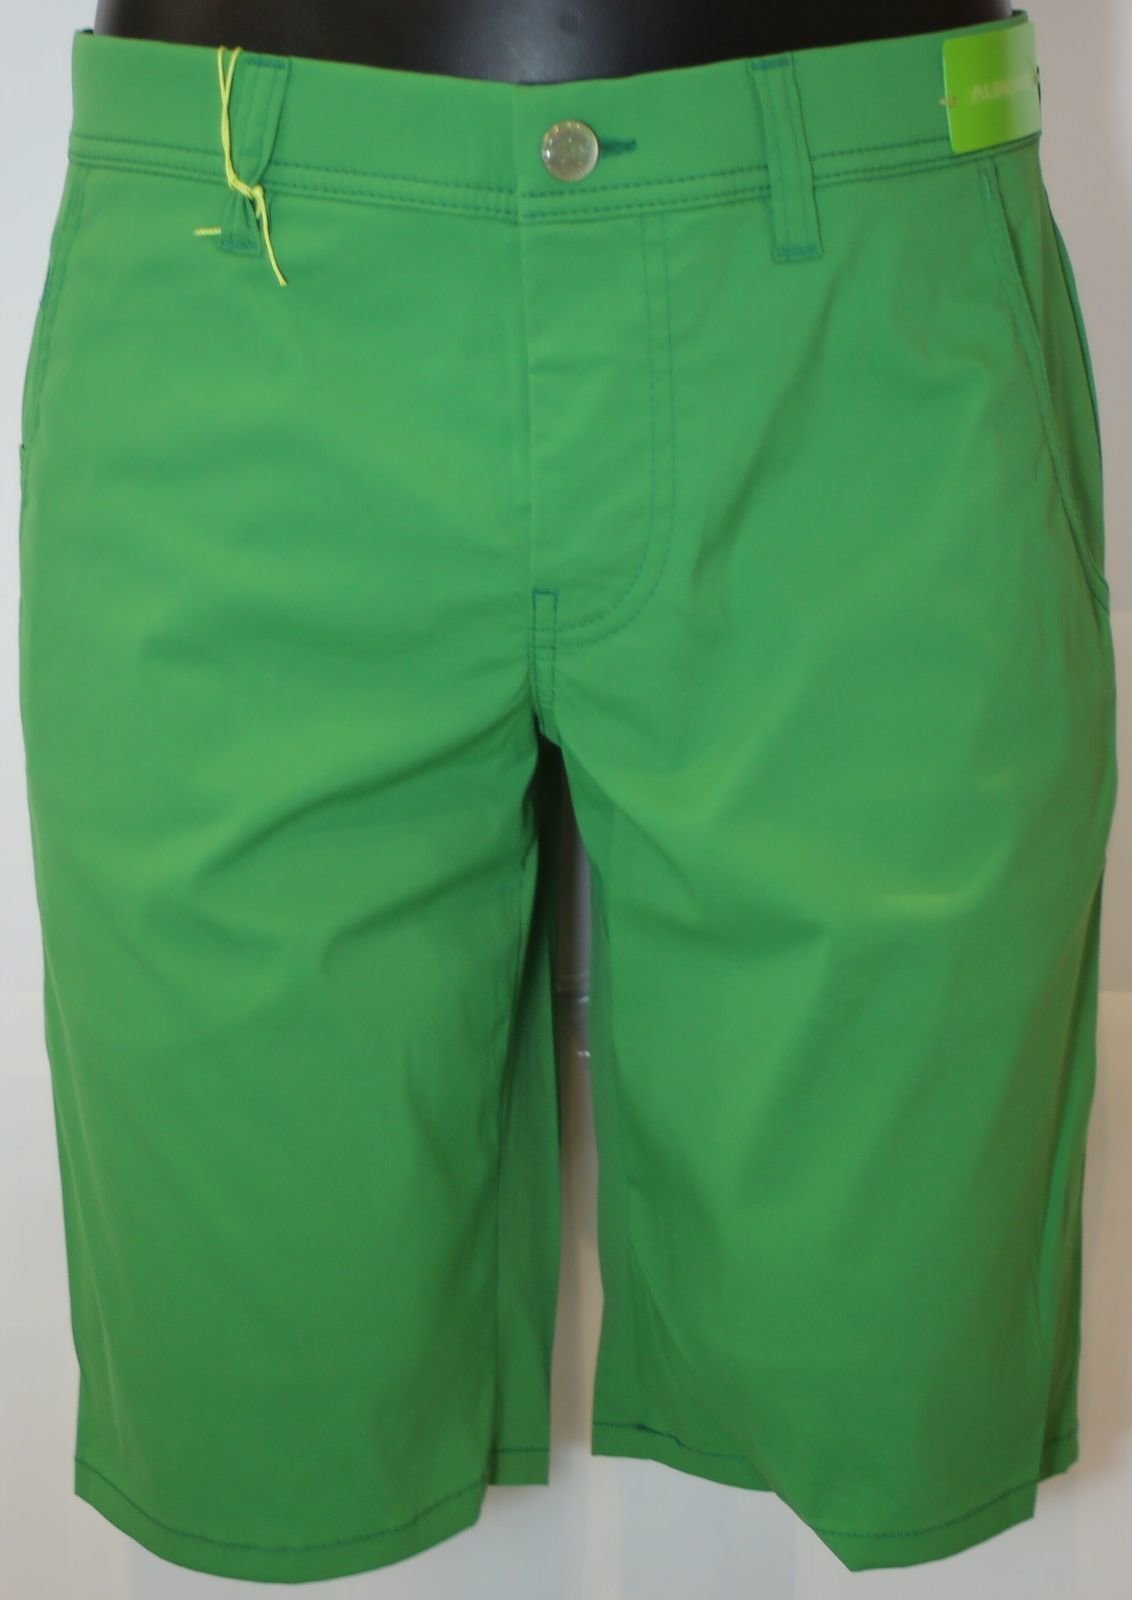 Pantalones cortos Alberto Earnie Waterrepellent Forest Green 46